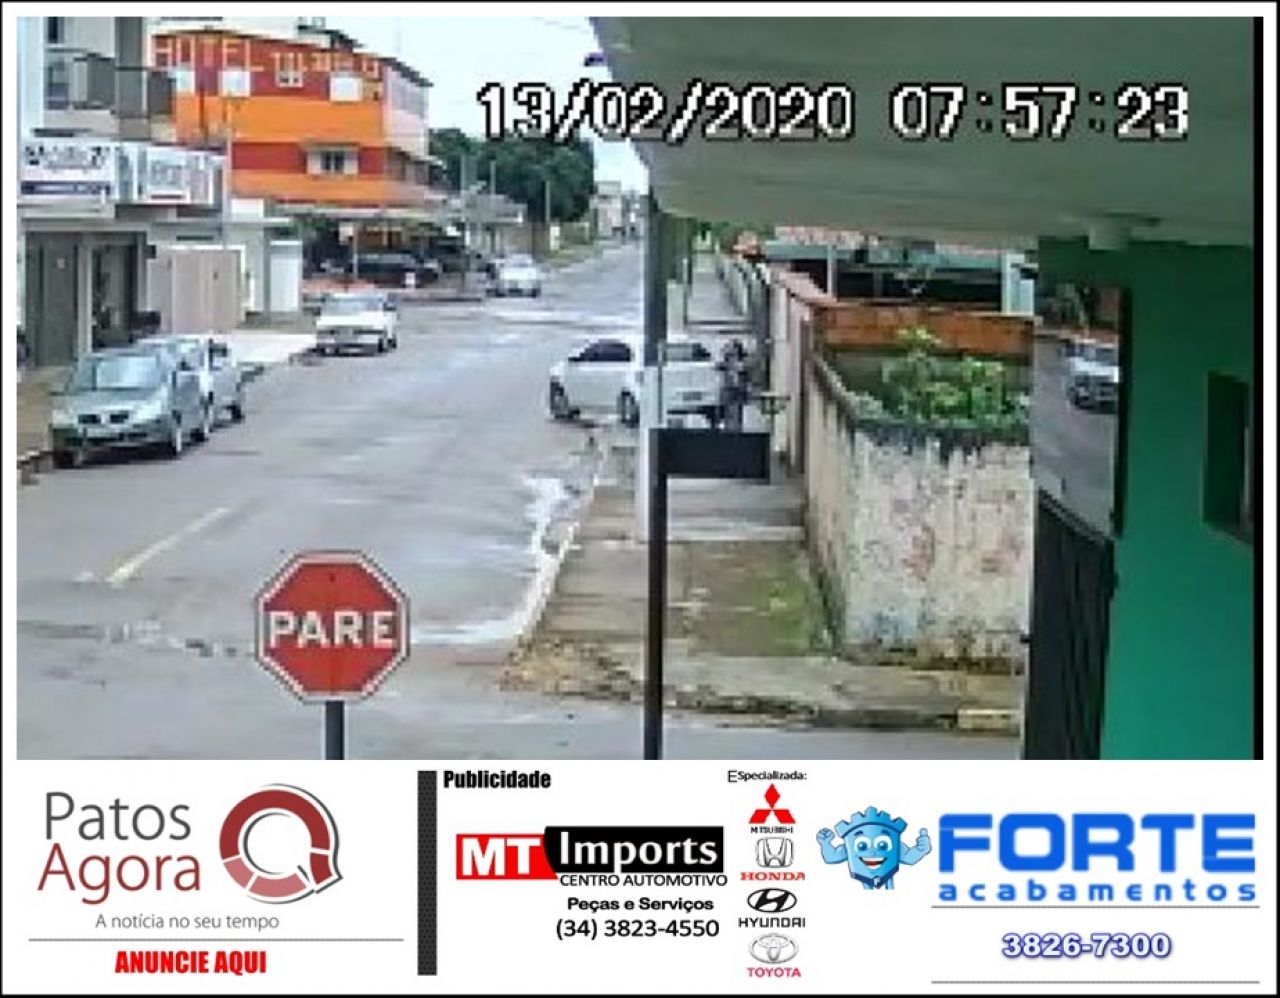 Motorista inabilitado tem mal súbito e atropela pedestre em Serra do Salitre